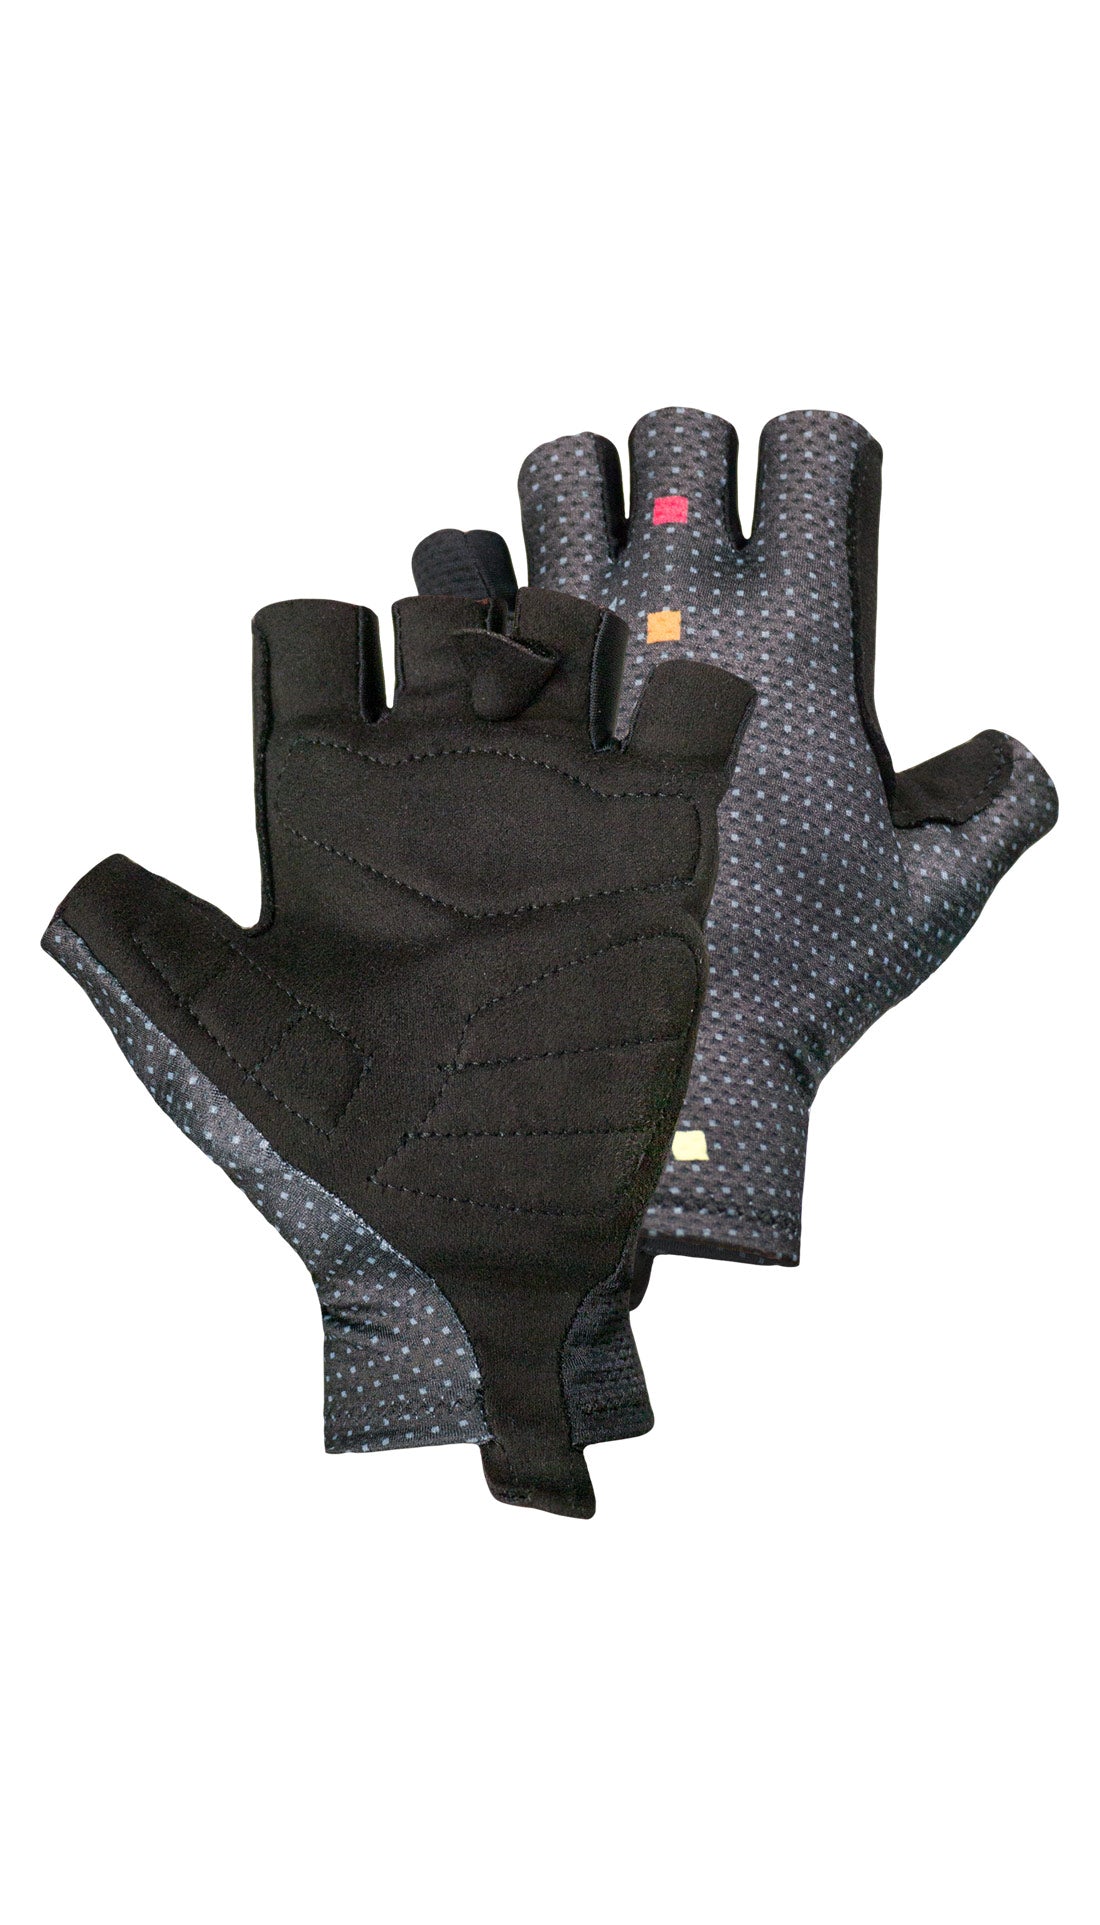 ELITE gloves